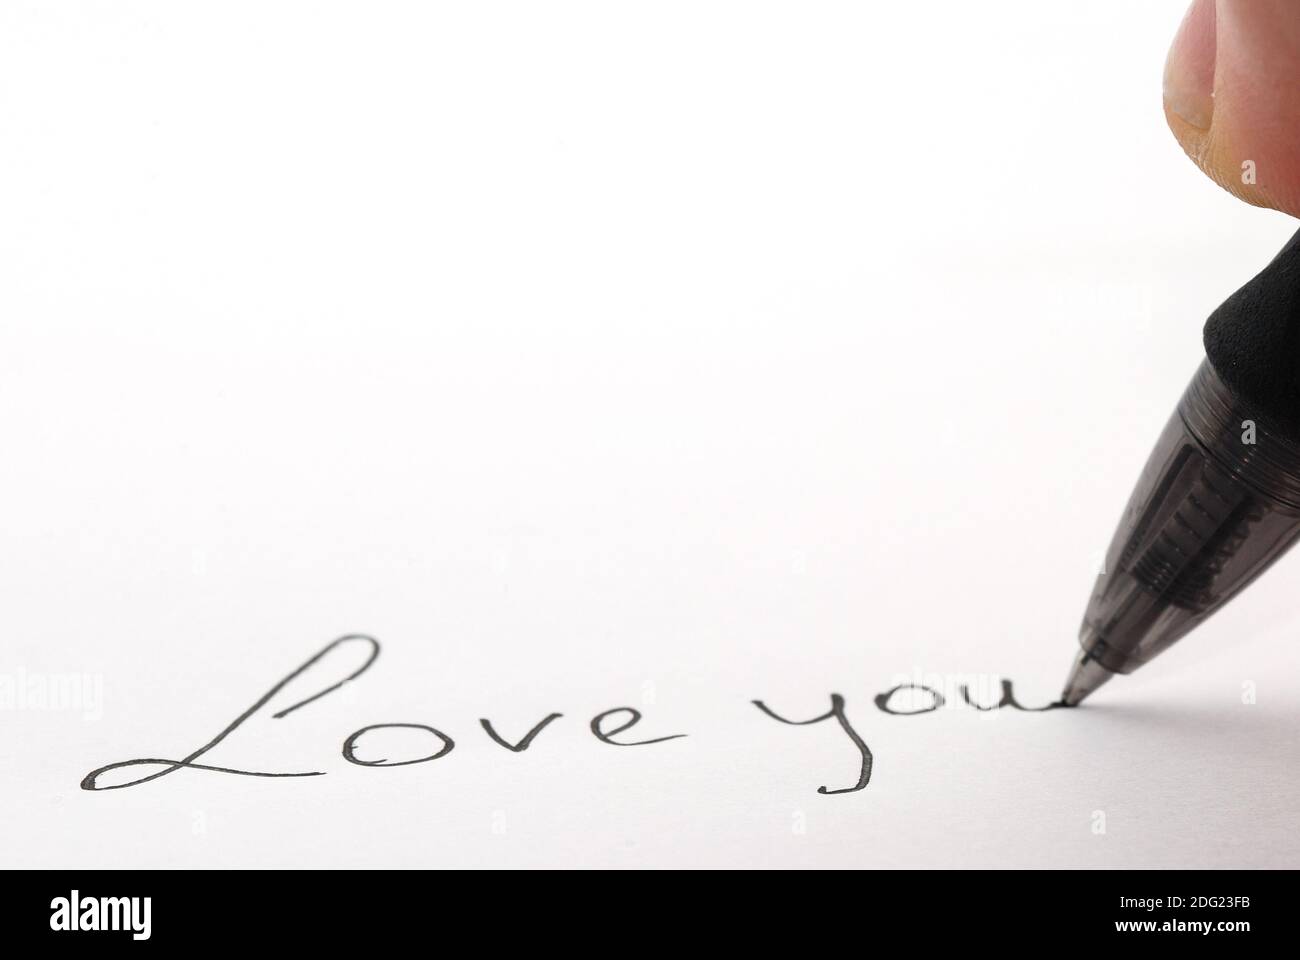 Love you geschrieben Stock Photo